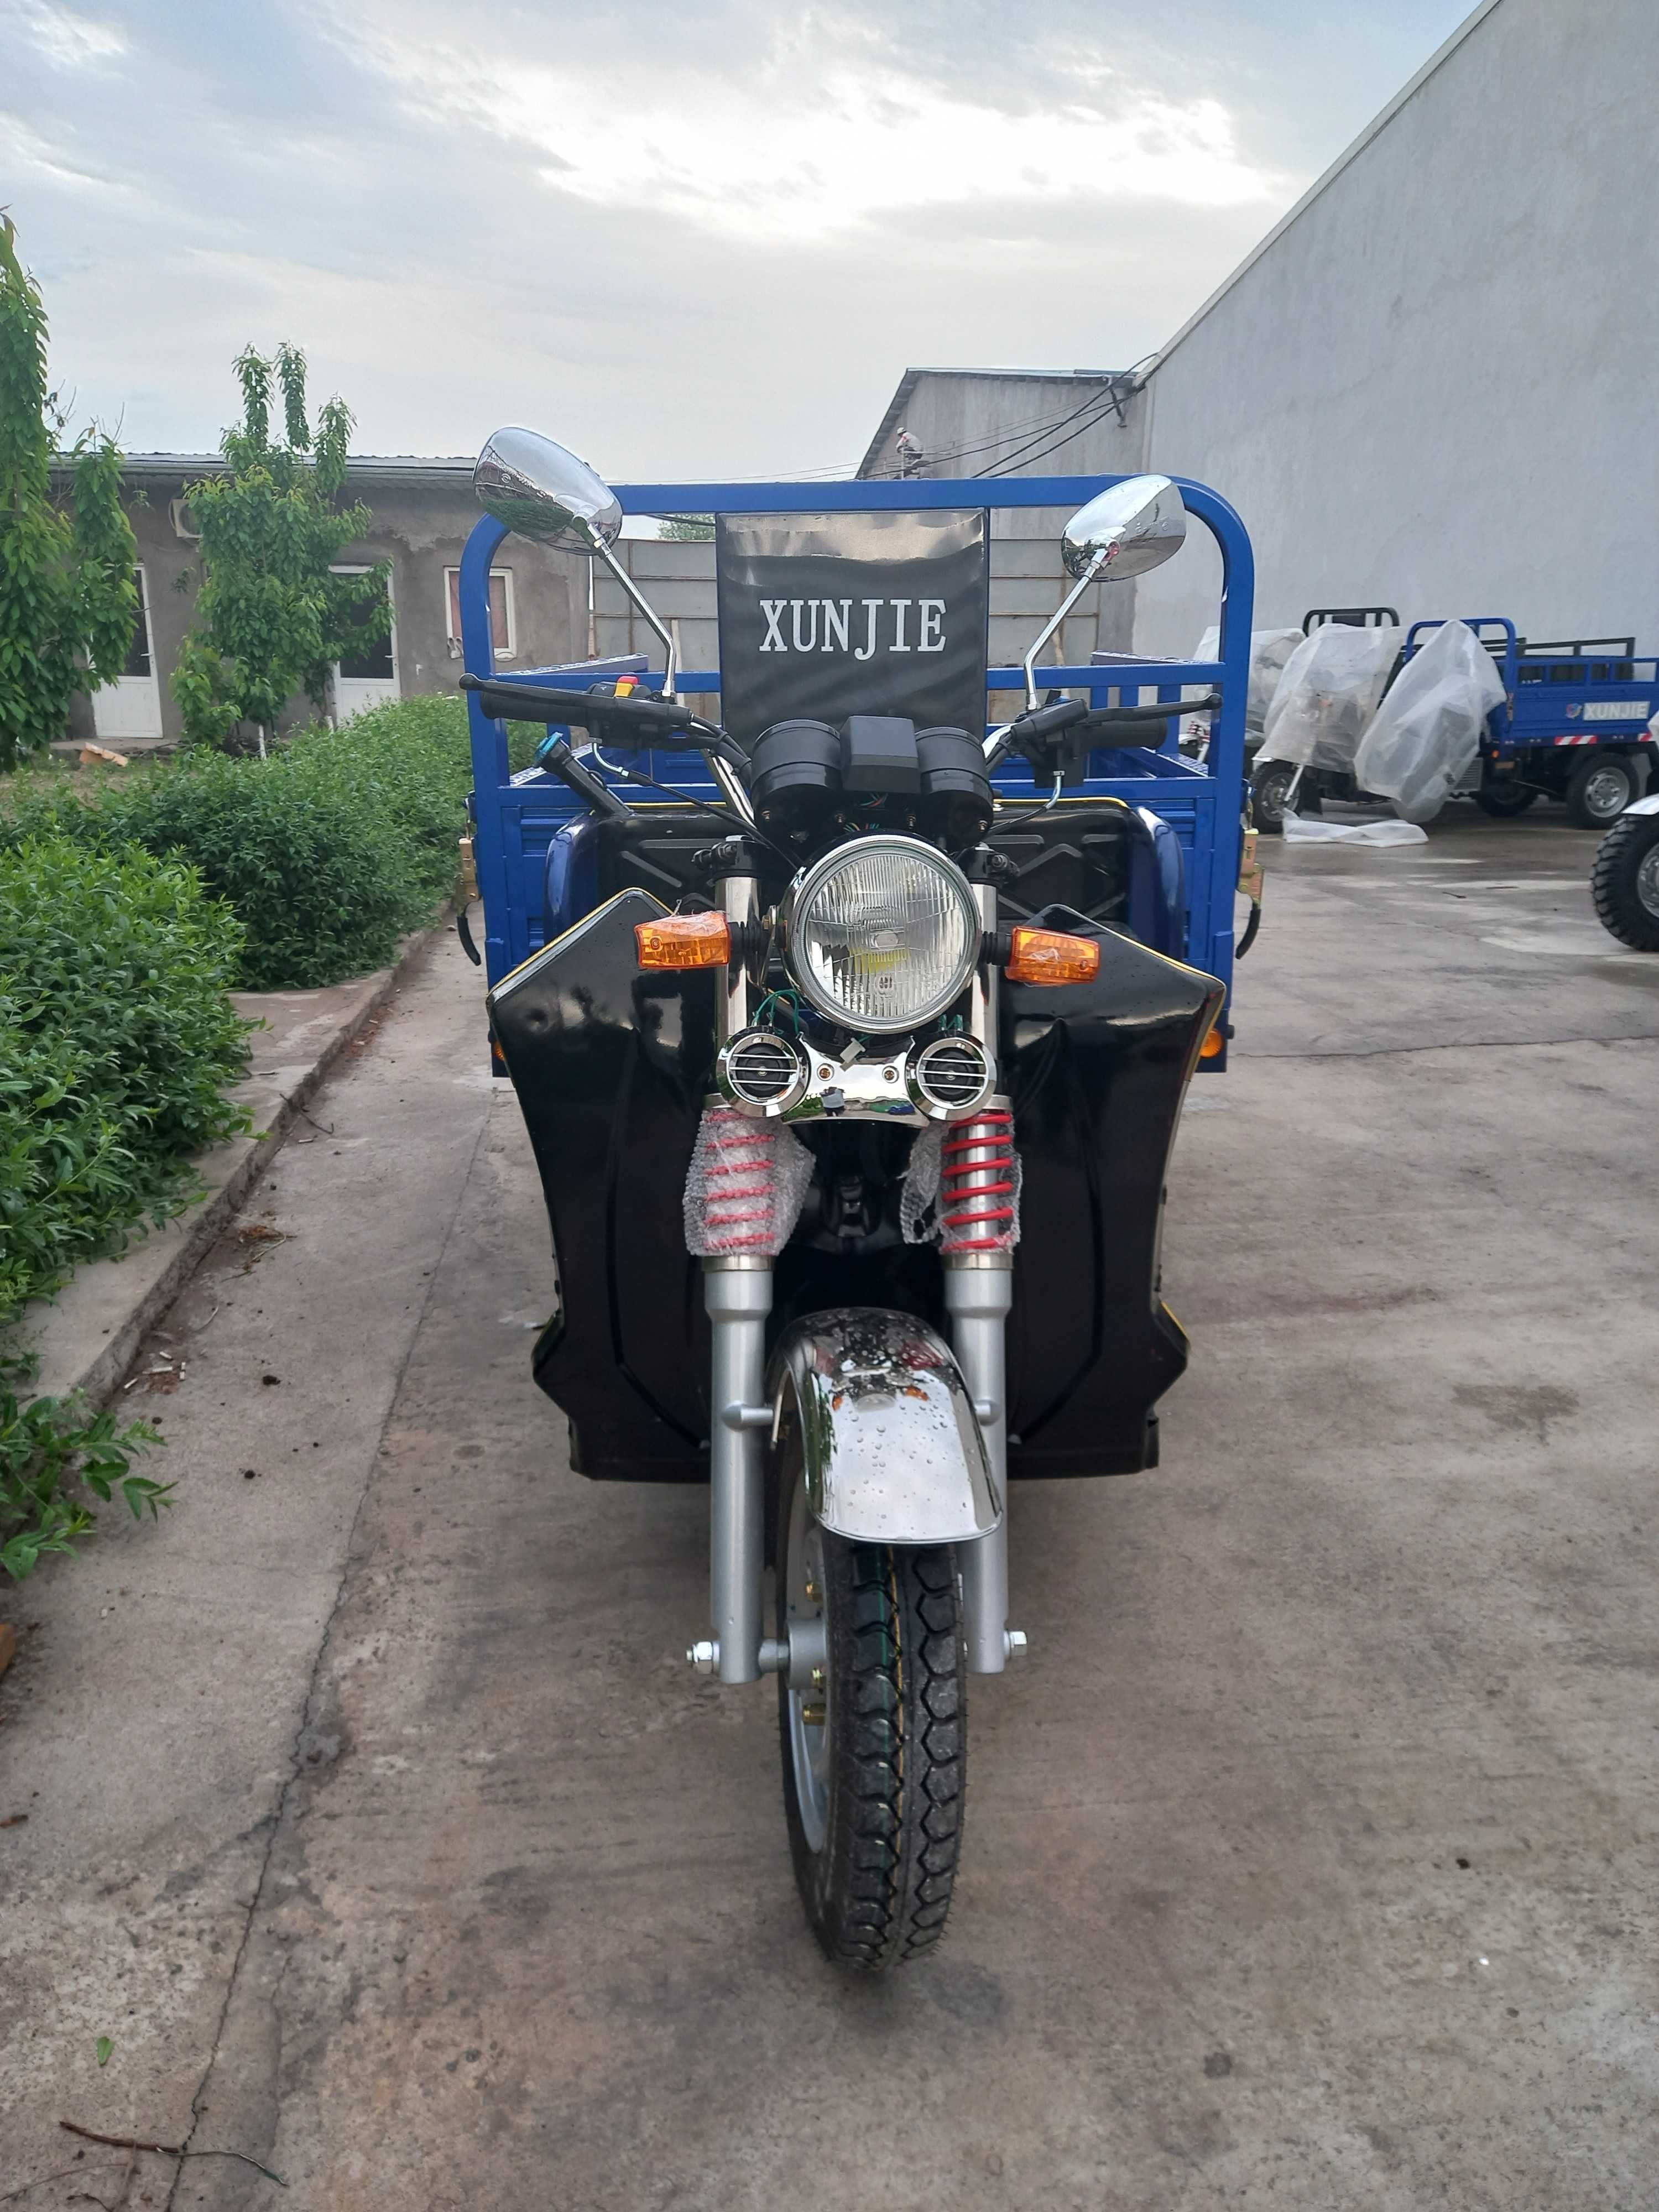 Трёхколёсный грузовой мотоцикл 50 СС XUNJIE